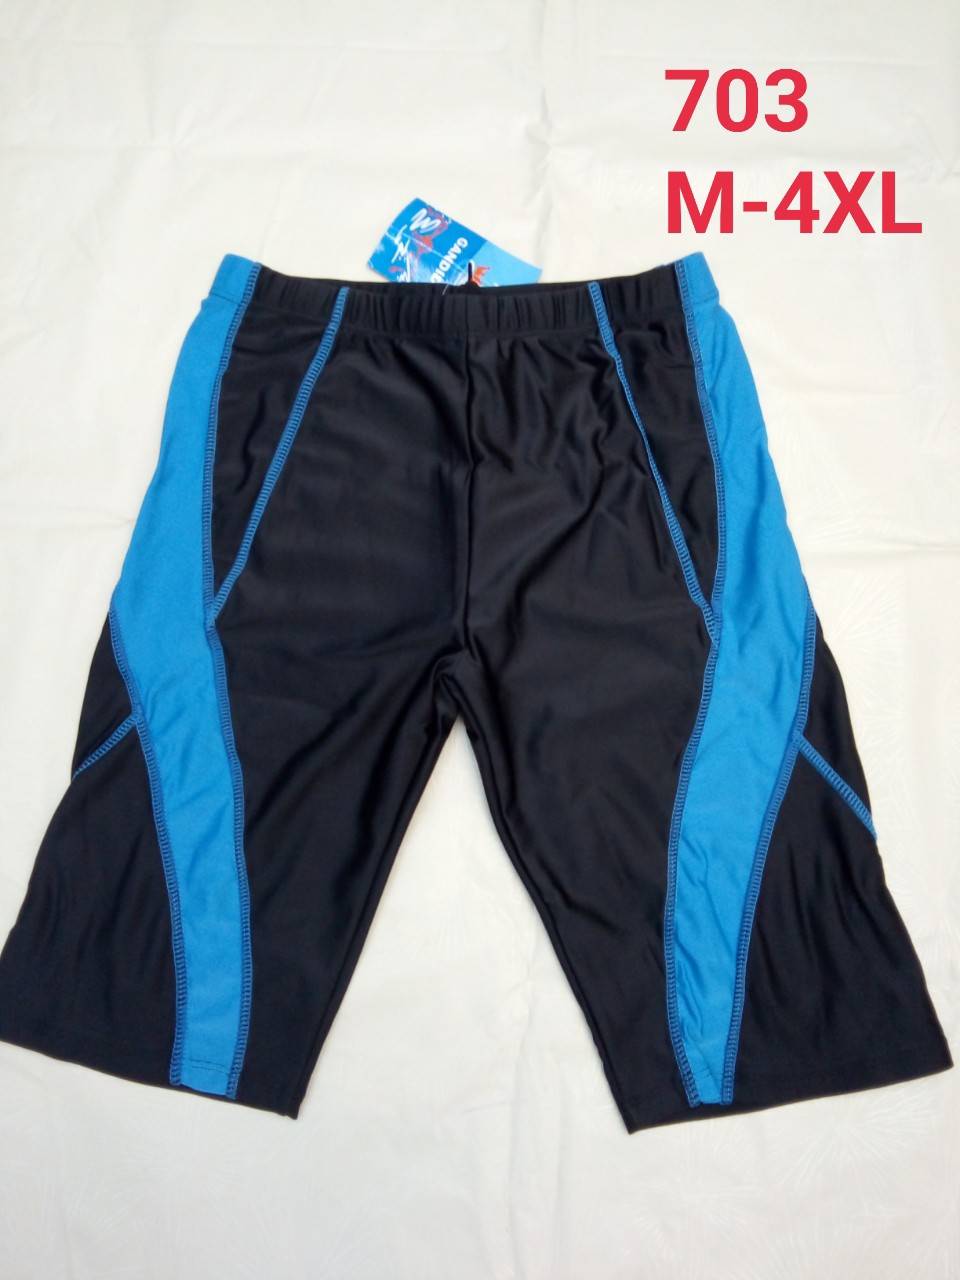 กางเกงว่ายน้ำชาย กางเกงว่ายน้ำ กางเกงว่ายน้ำผู้ชาย  ผ้าเนื้อดีมาก L XL 2XL 3XL 4XLพร้อมส่งด่วน pollyshop polyshop